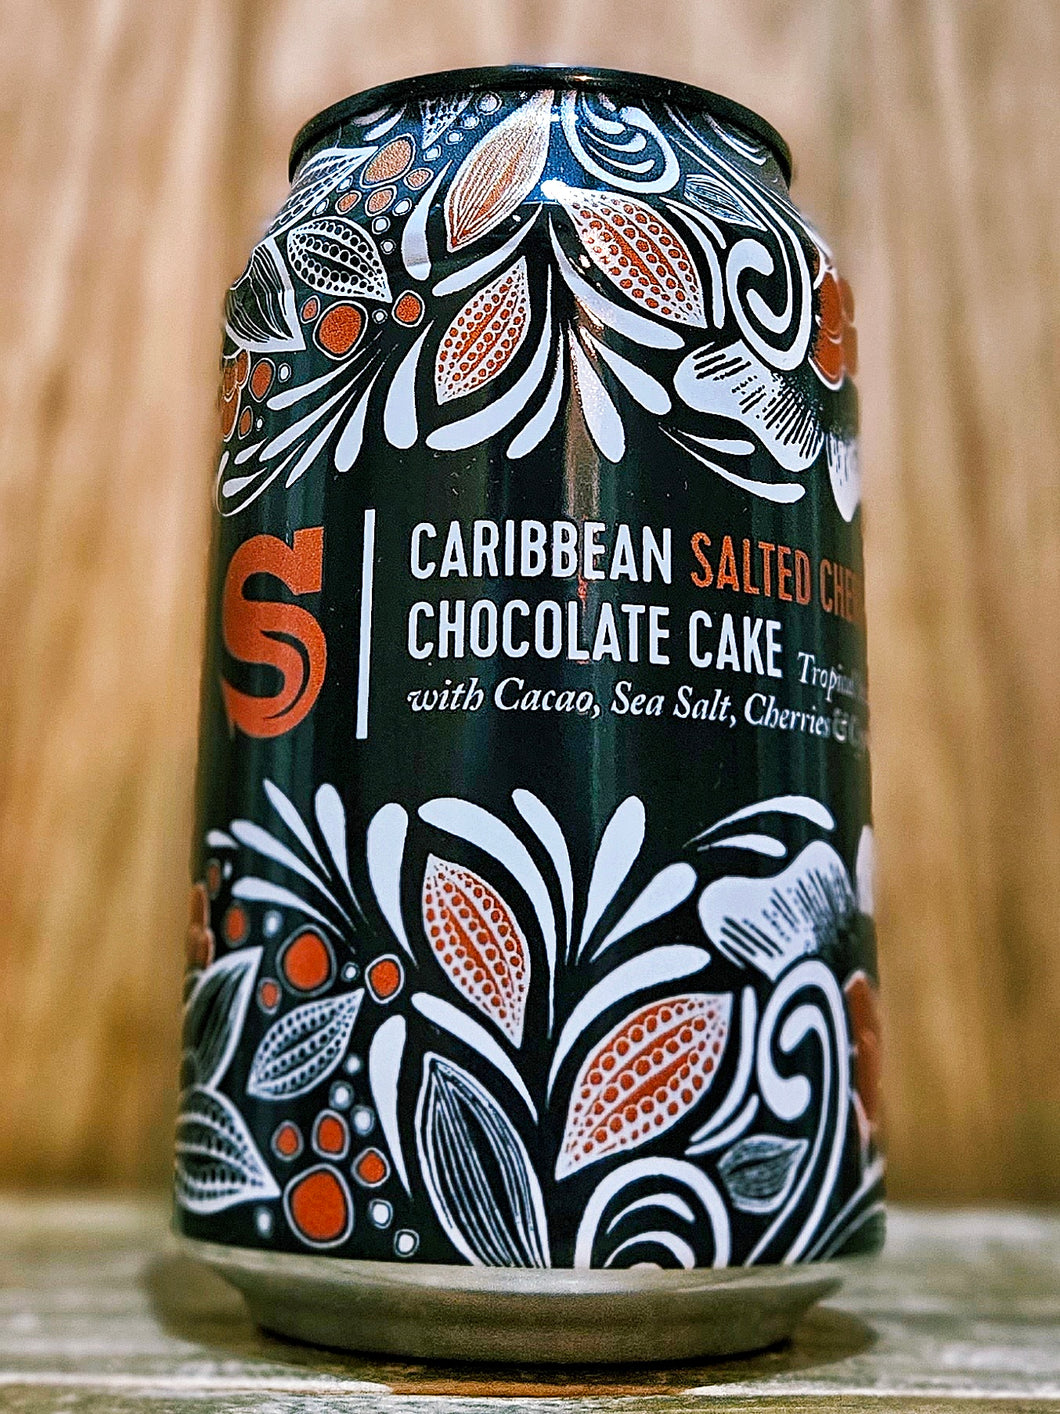 Siren - Caribbean Salted Cherry Chocolate Cake